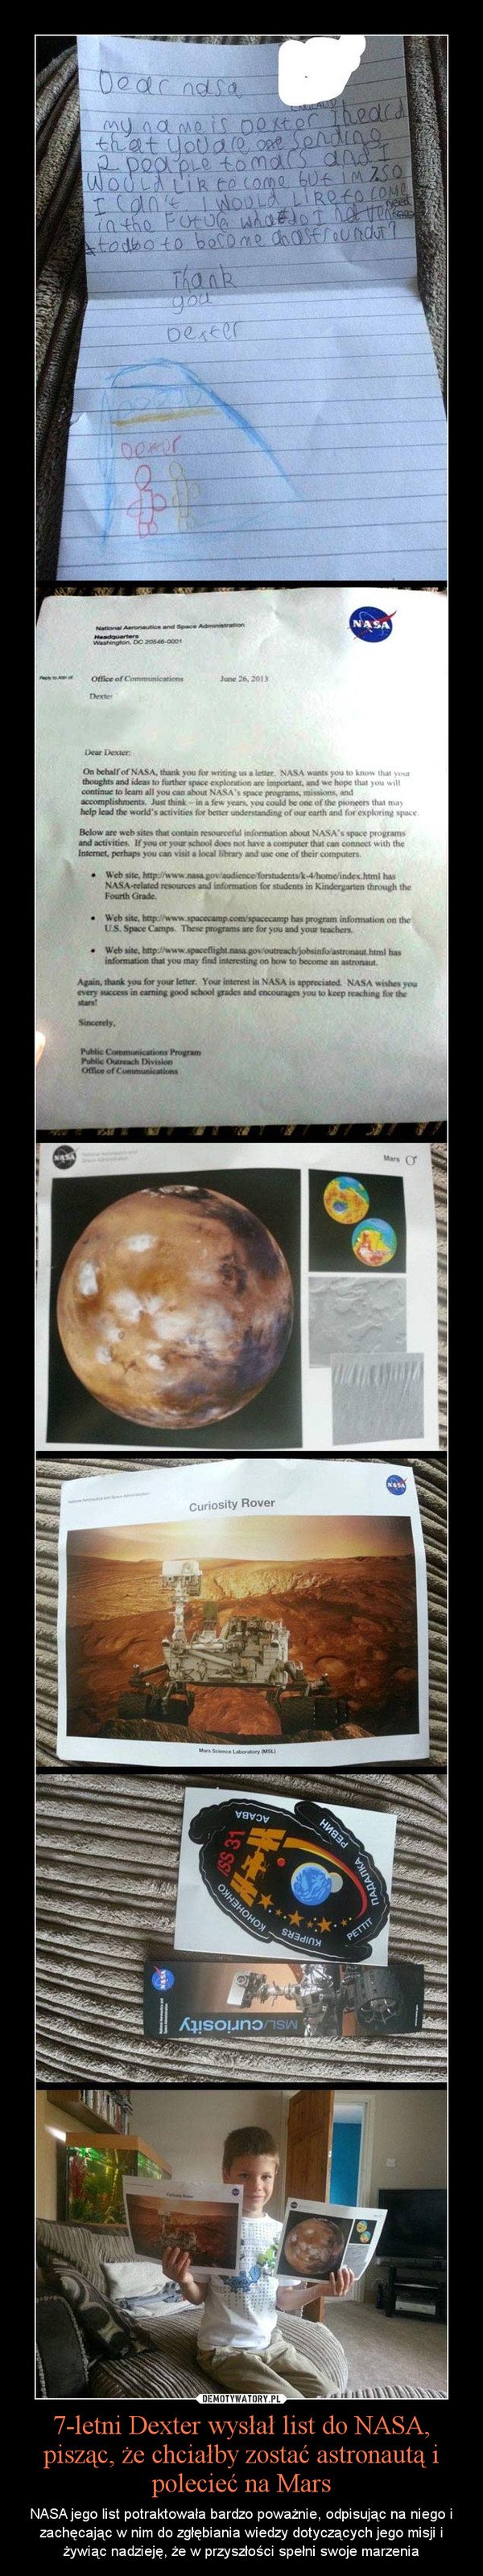 7-letni Dexter wysłał list do NASA, pisząc, że chciałby zostać astronautą i polecieć na Mars – NASA jego list potraktowała bardzo poważnie, odpisując na niego i zachęcając w nim do zgłębiania wiedzy dotyczących jego misji i żywiąc nadzieję, że w przyszłości spełni swoje marzenia 